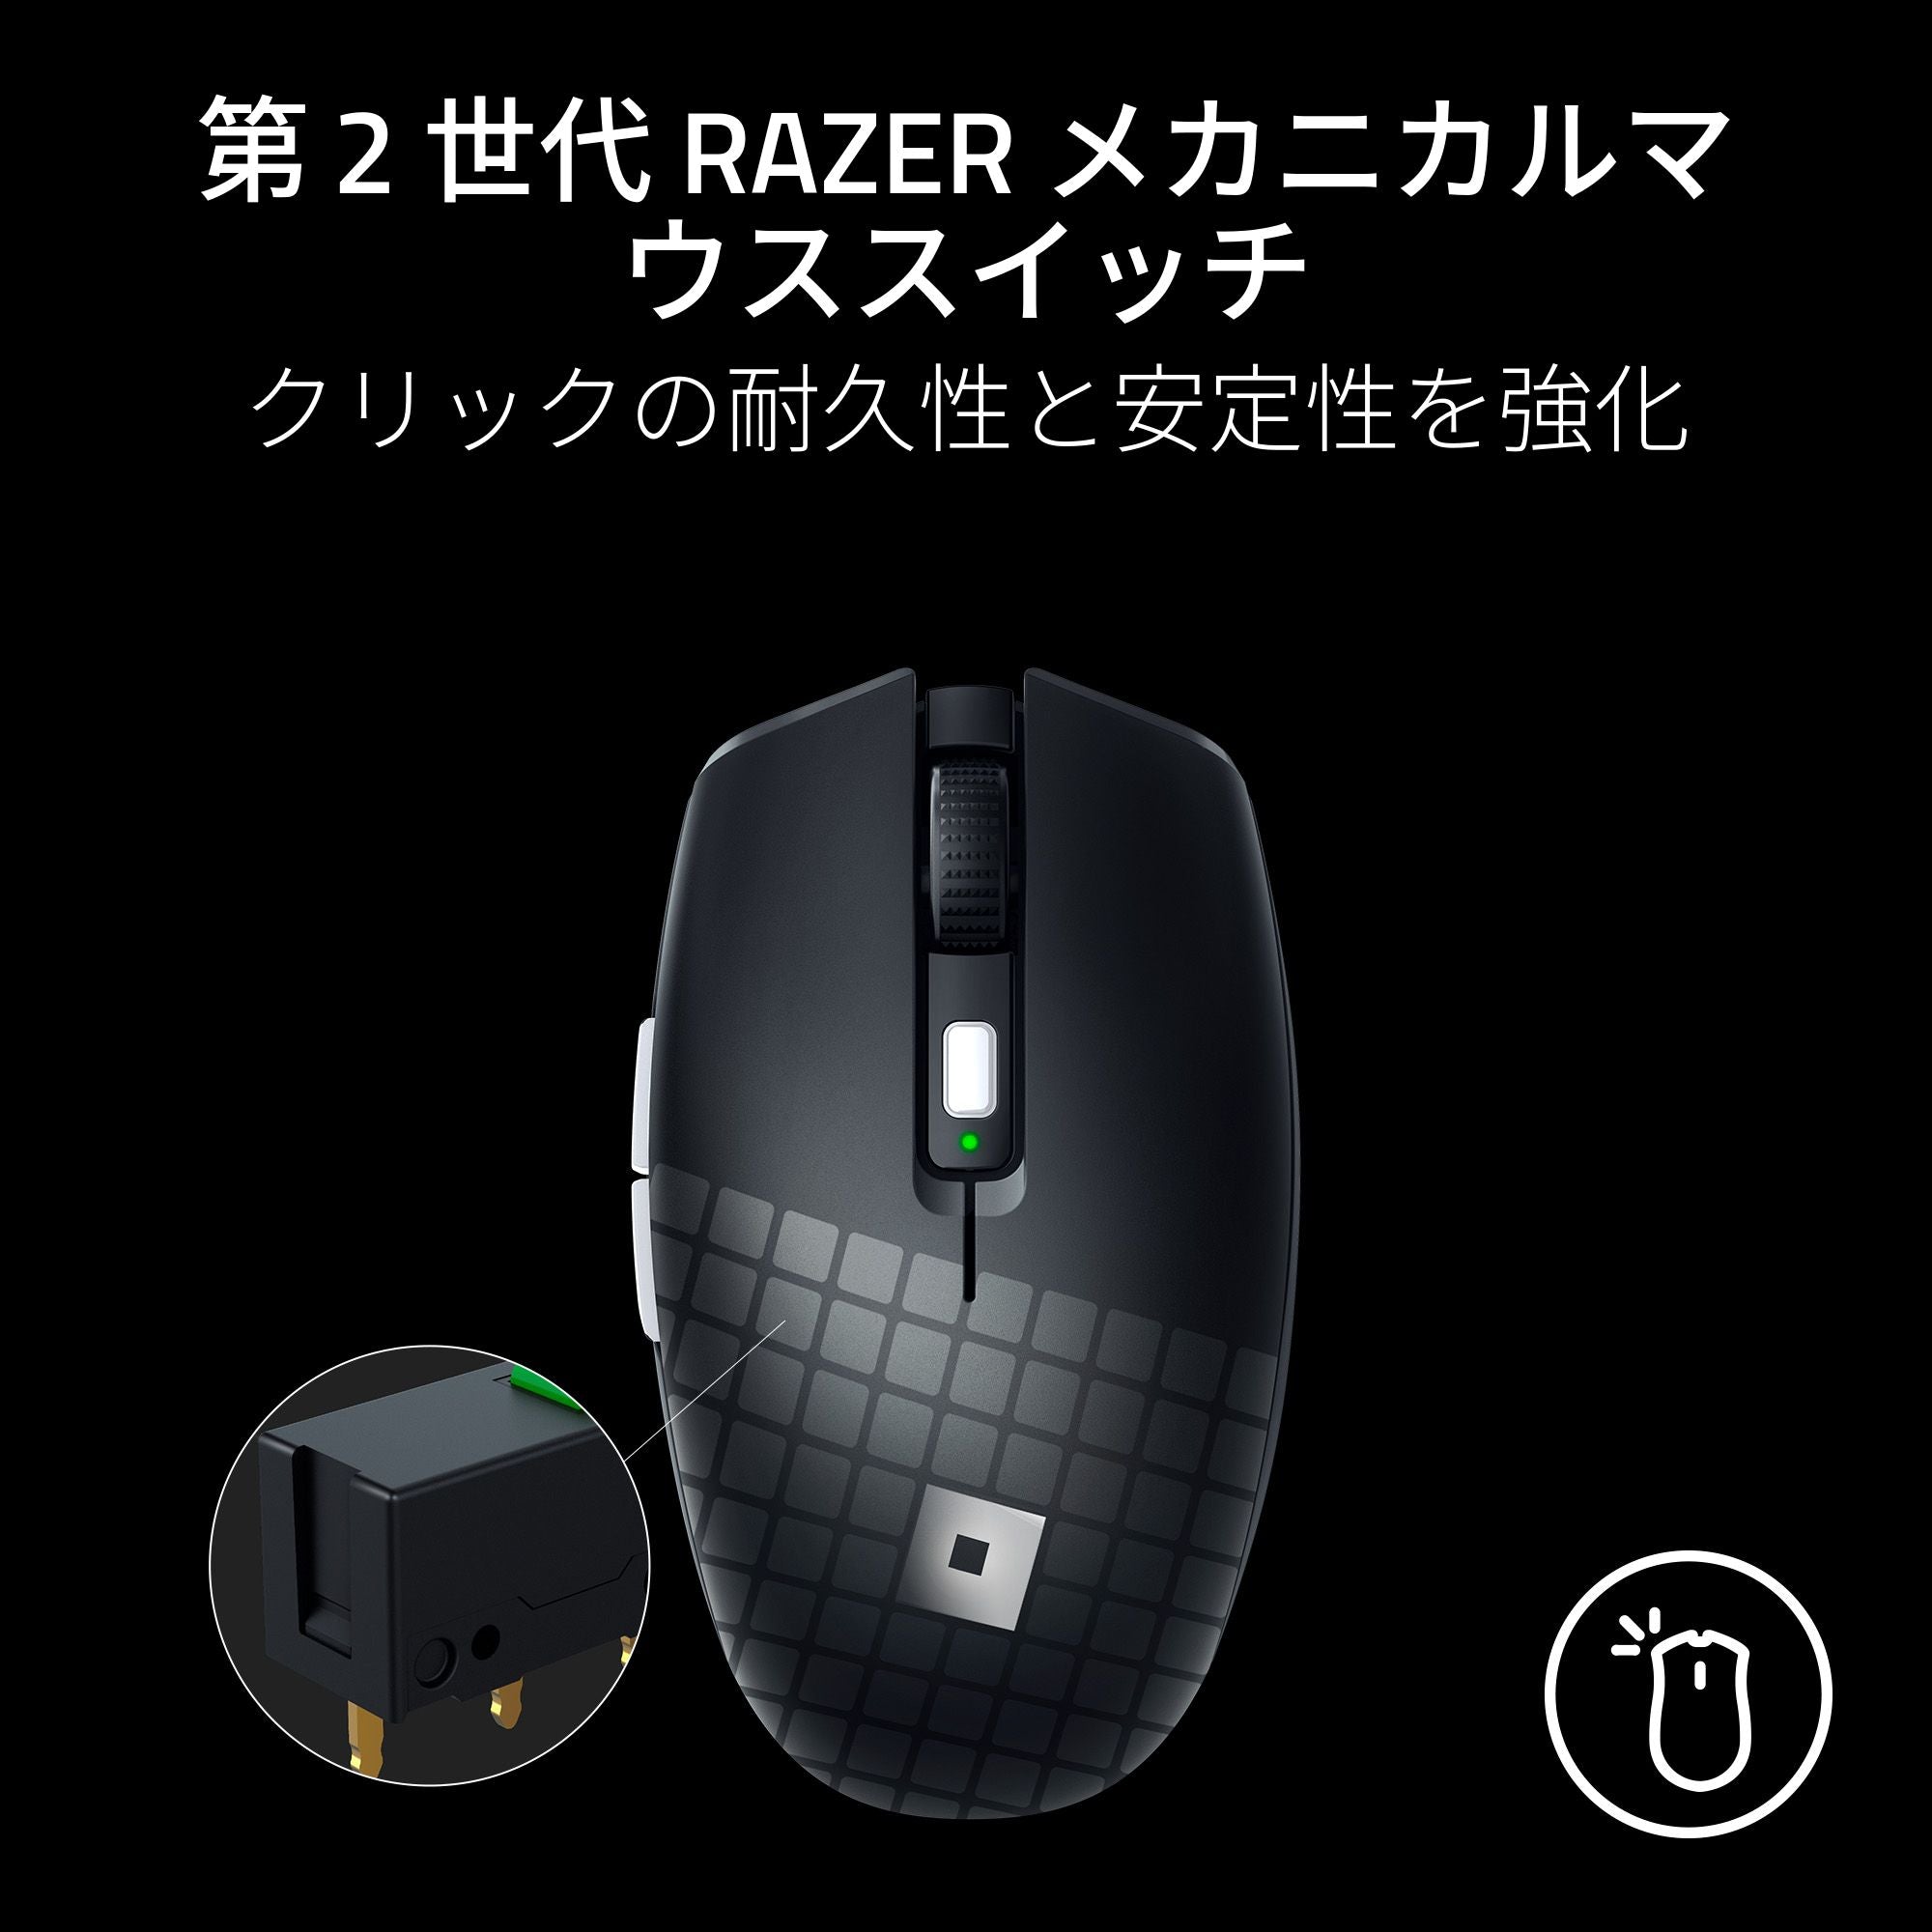 【新品、未開封】Razer Orochi V2 ニンフィア エディション